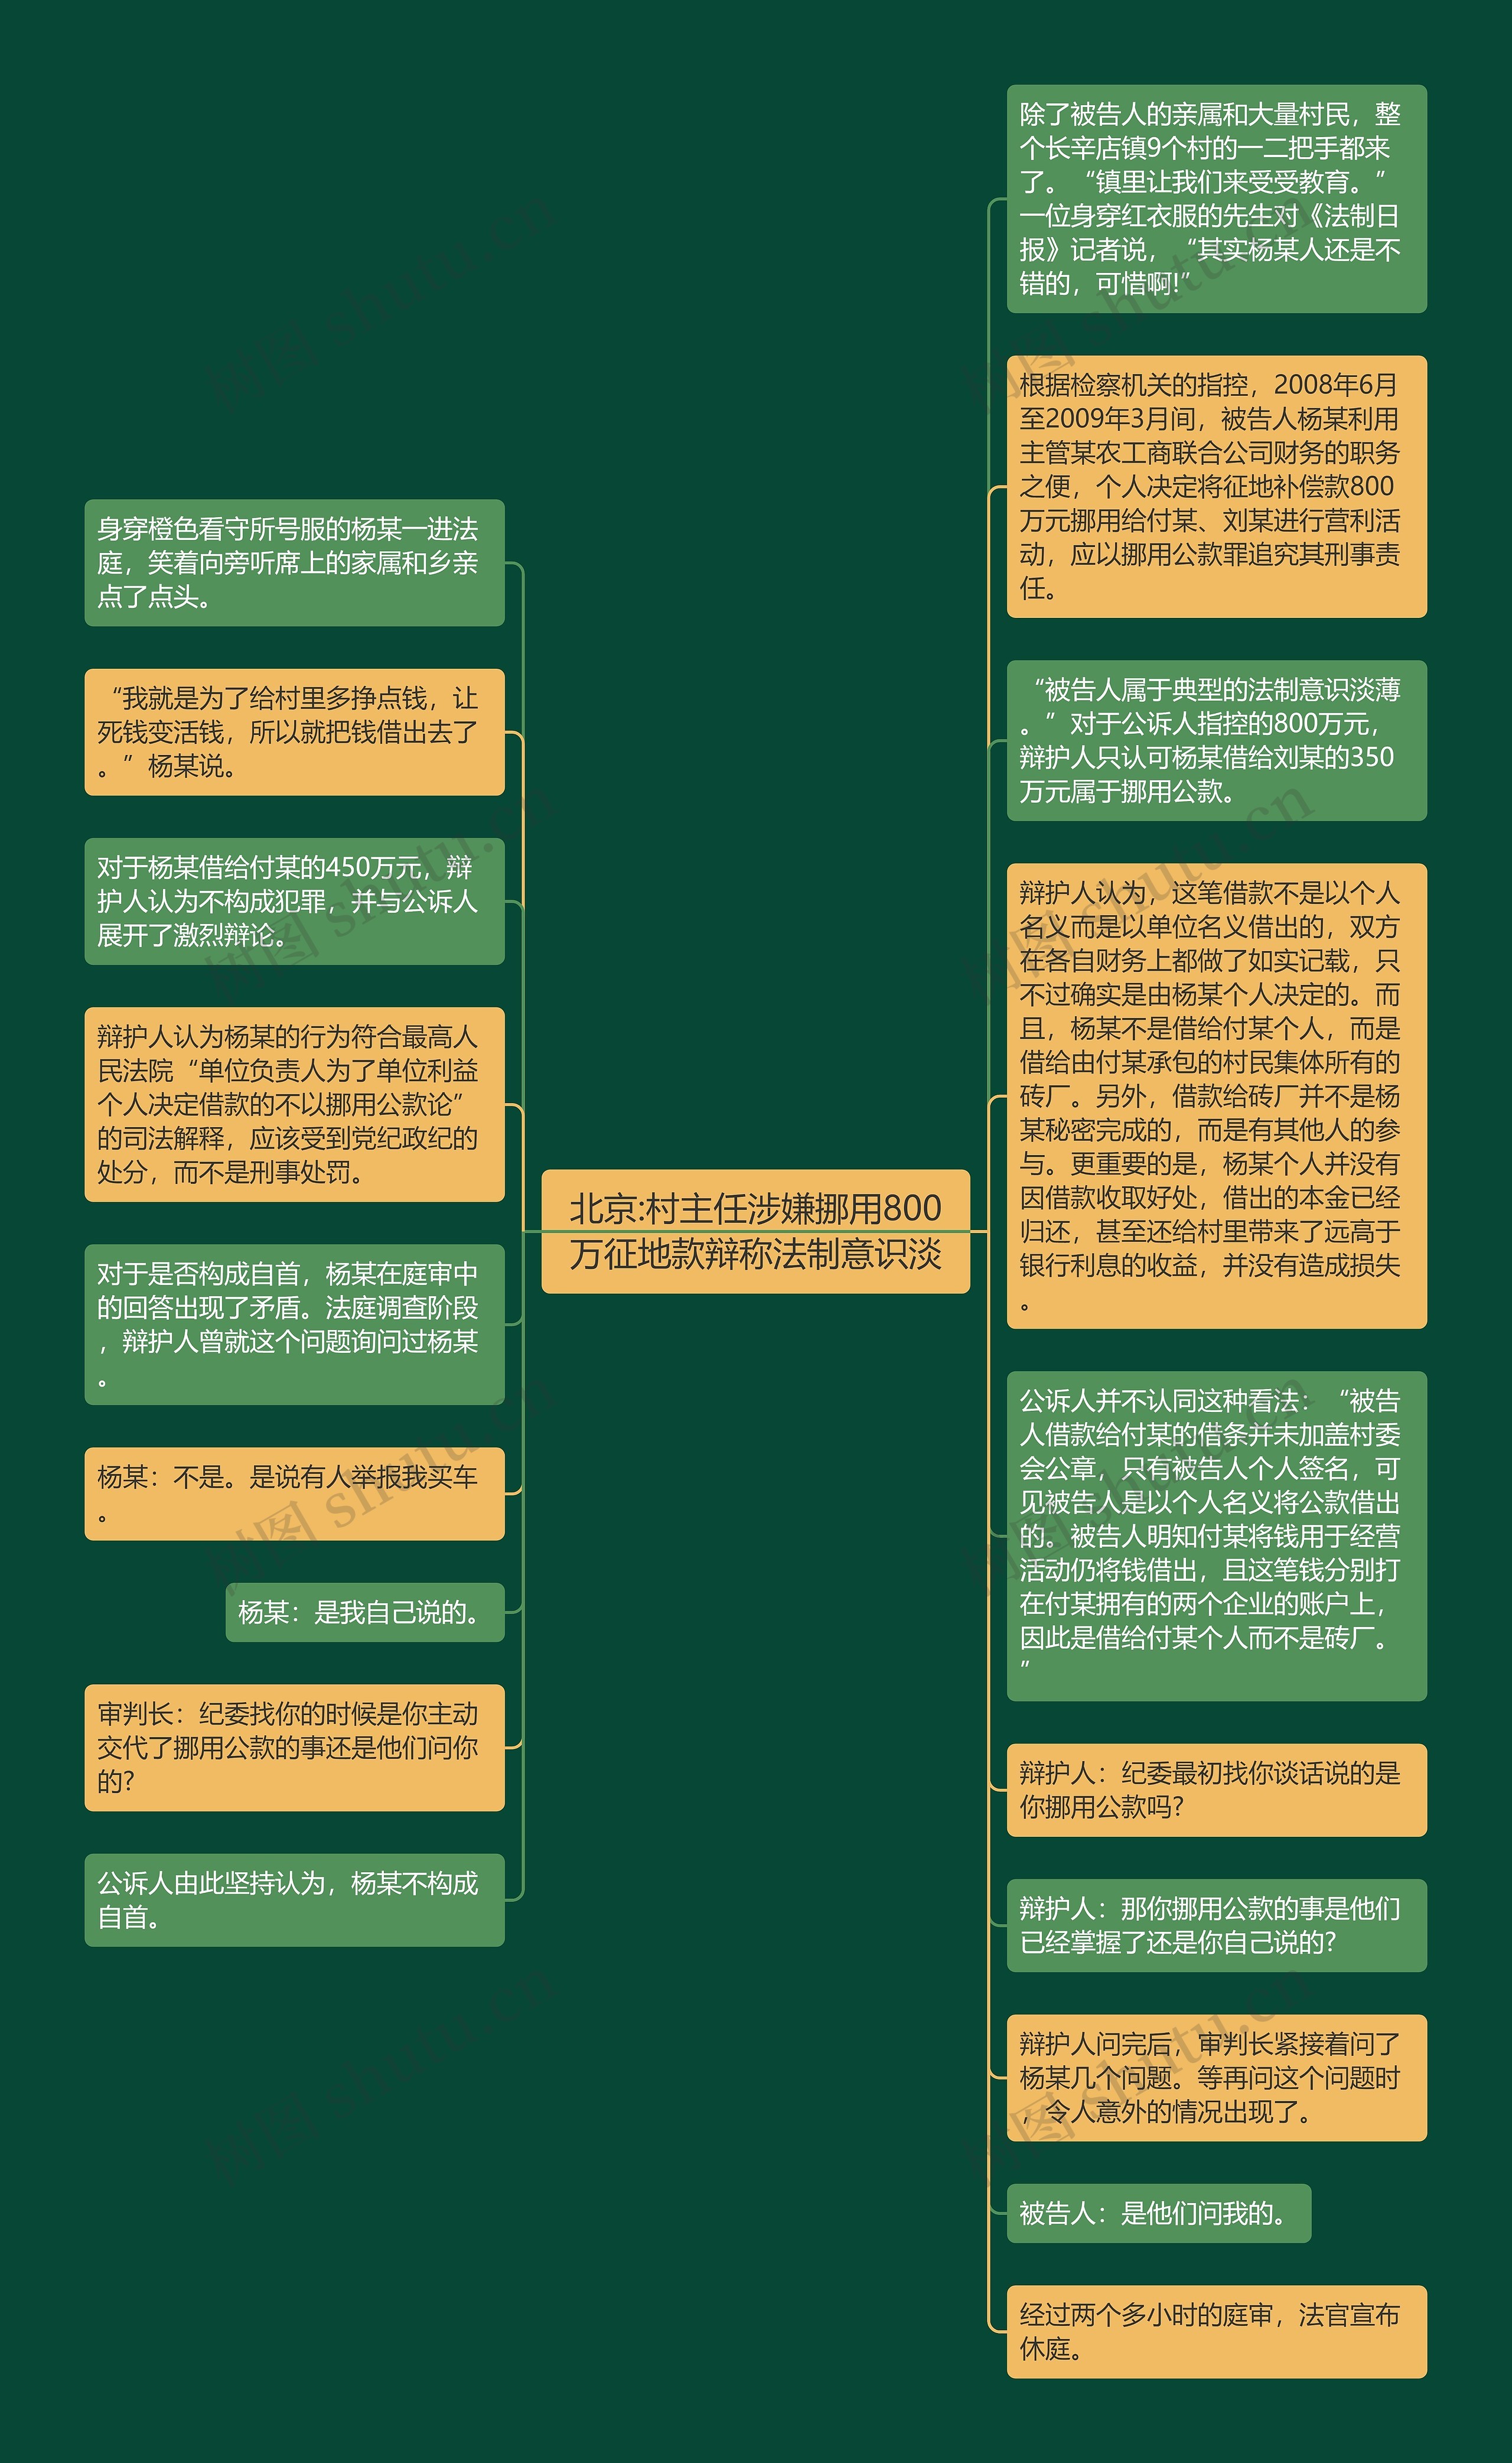 北京:村主任涉嫌挪用800万征地款辩称法制意识淡思维导图